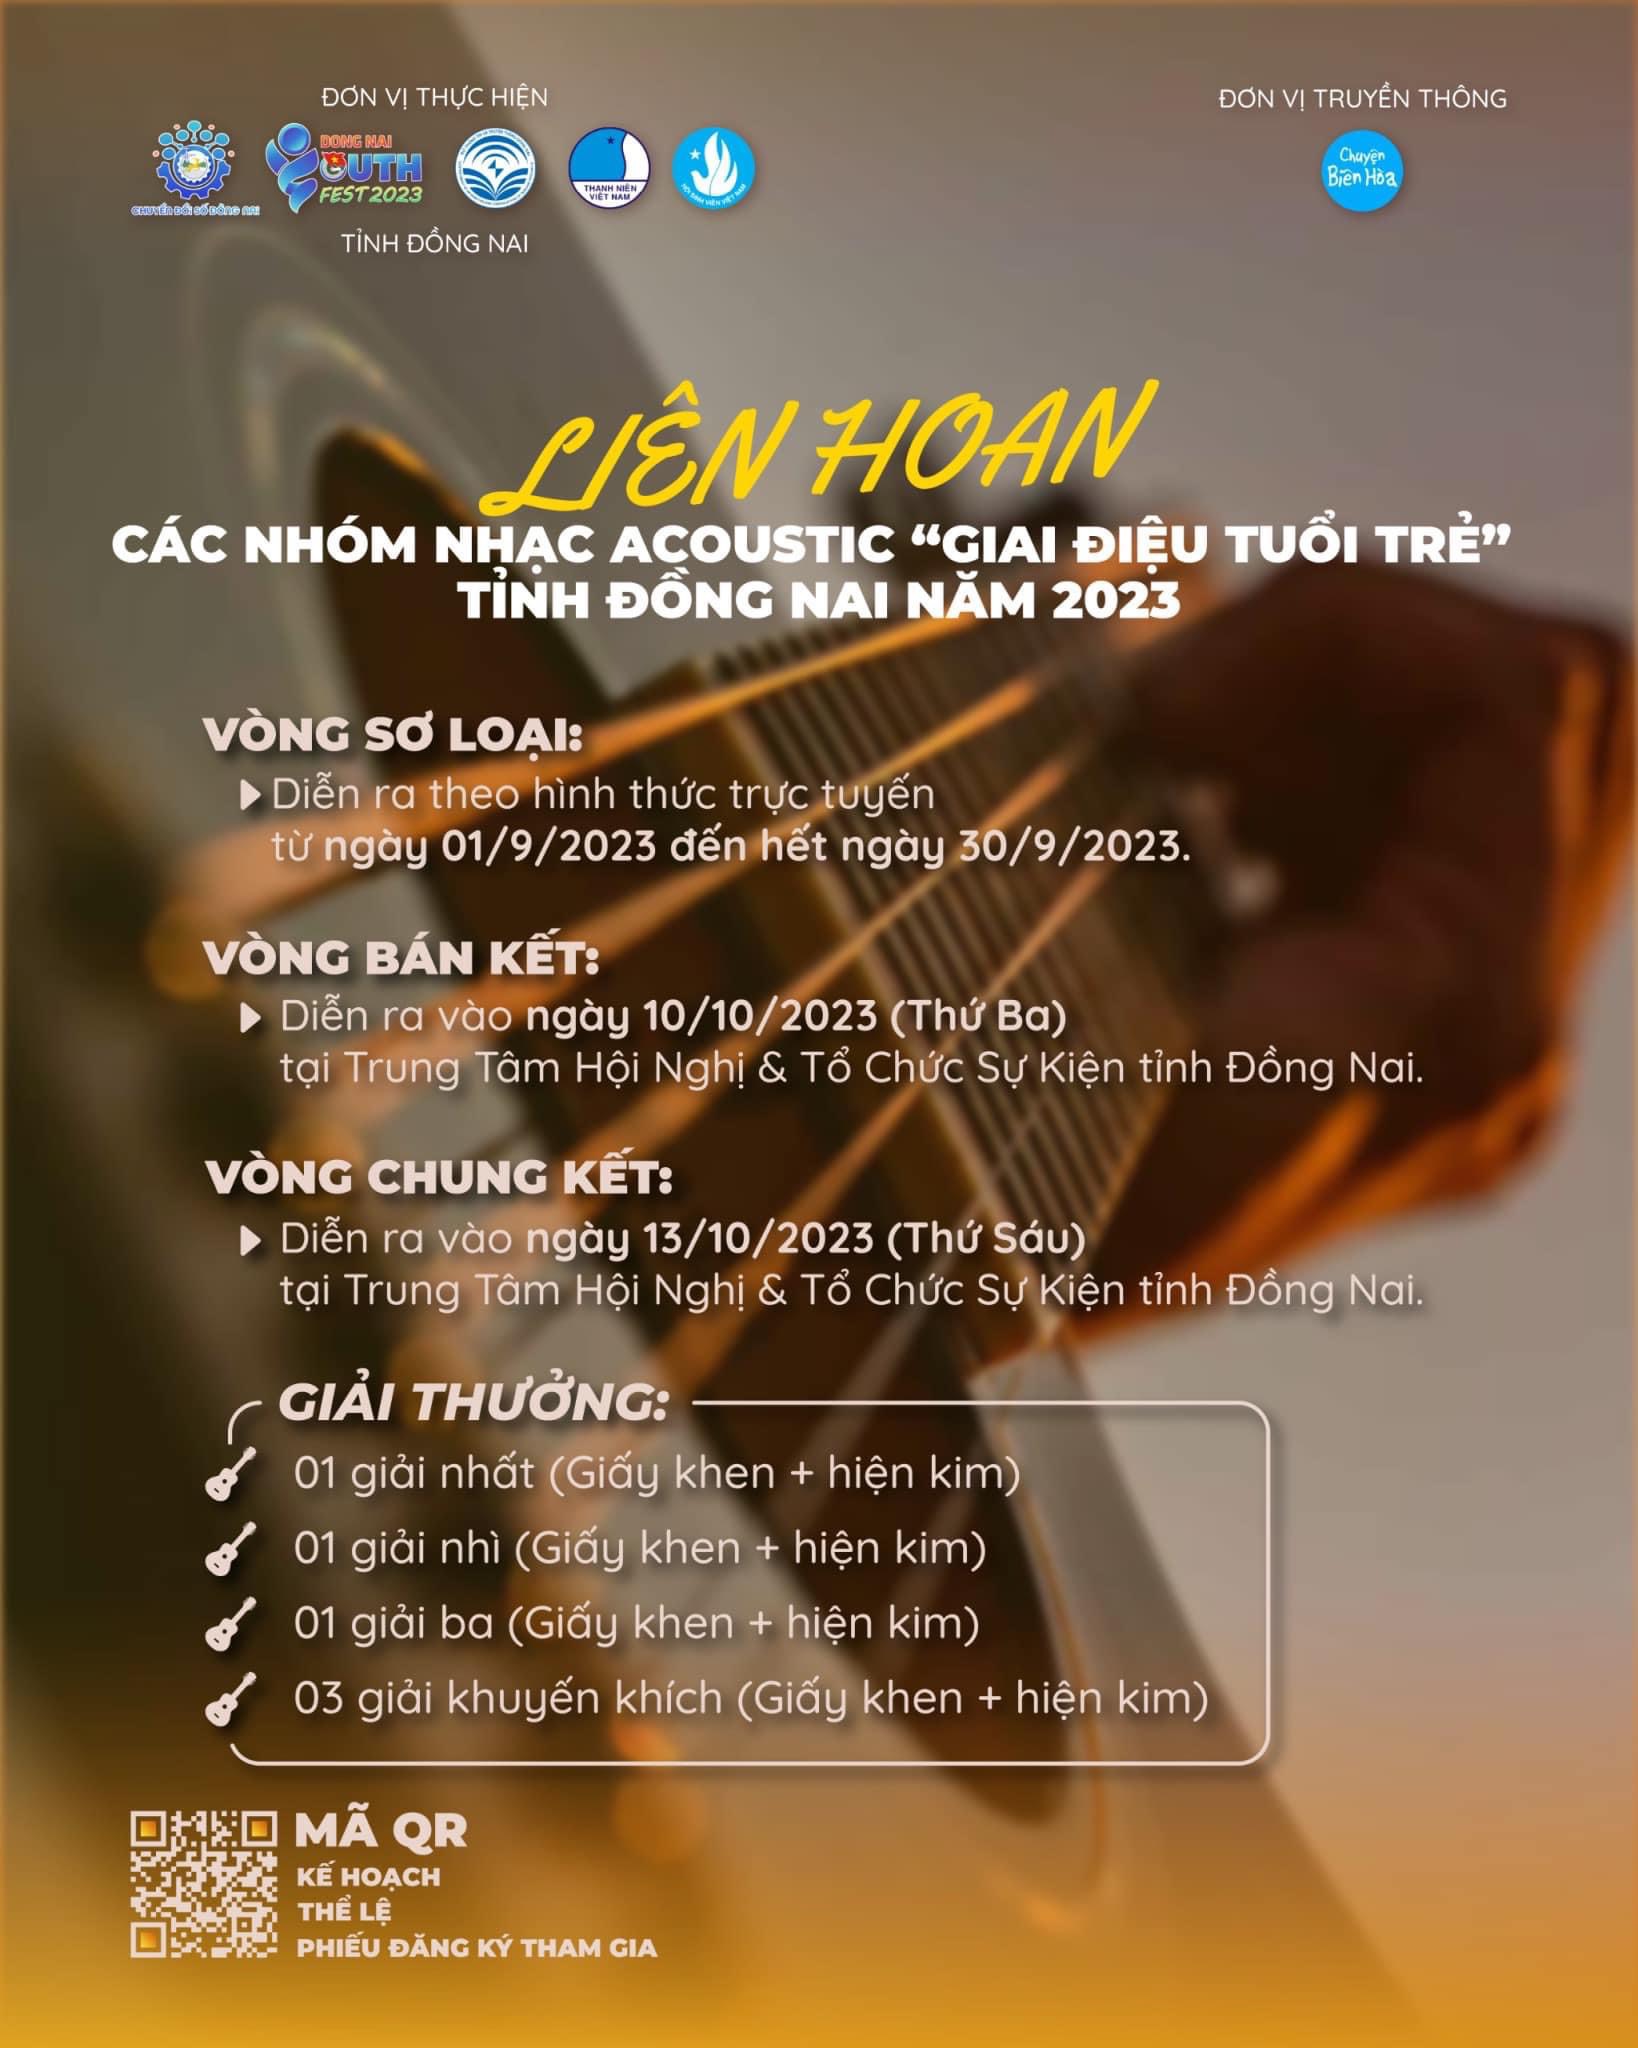 Liên hoan các nhóm nhạc Acoustic "Giai điệu tuổi trẻ" tỉnh Đồng Nai năm 2023